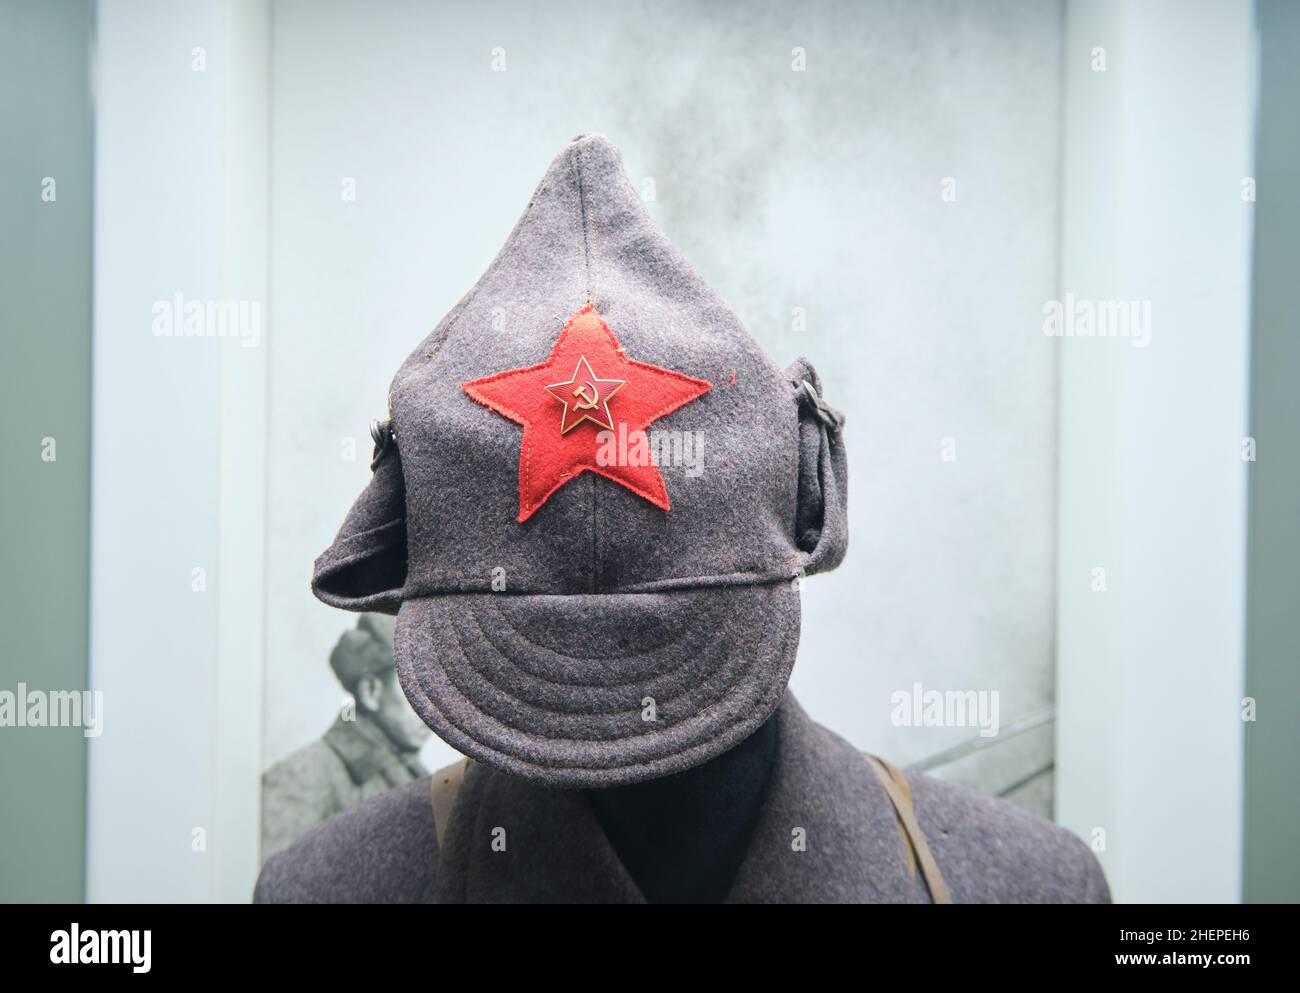 Eine alte graue Wolle russische, sowjetische Soldaten Mütze mit rotem Stern,  Hammer, Sichel-Symbol. Im Staatlichen Museum der Streitkräfte der Republik  Usbekisch Stockfotografie - Alamy